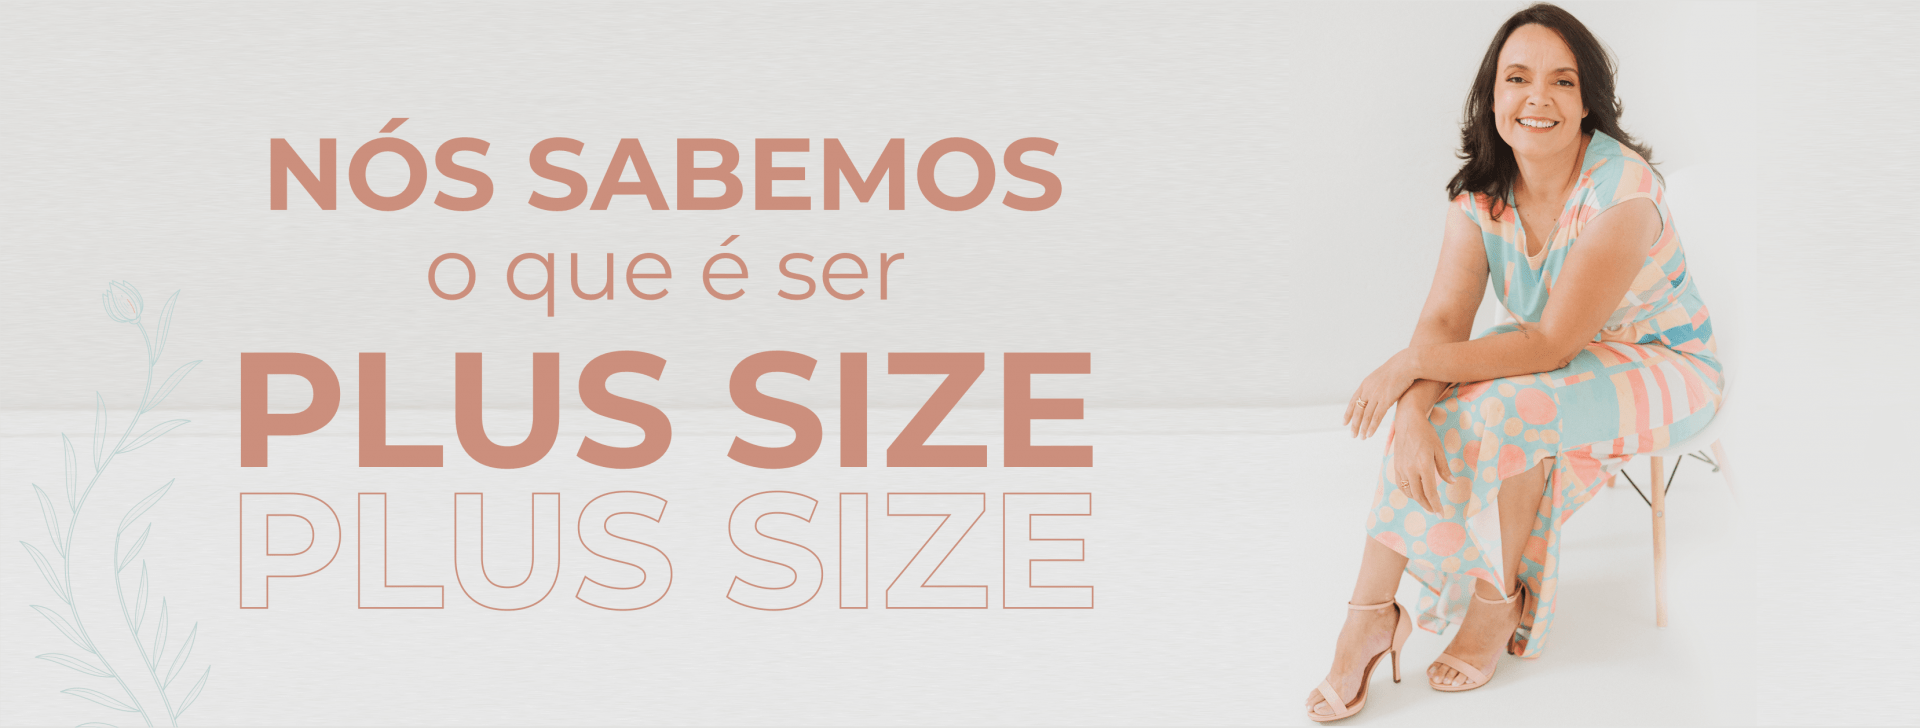 Nós sabemos o que é ser Plus Size